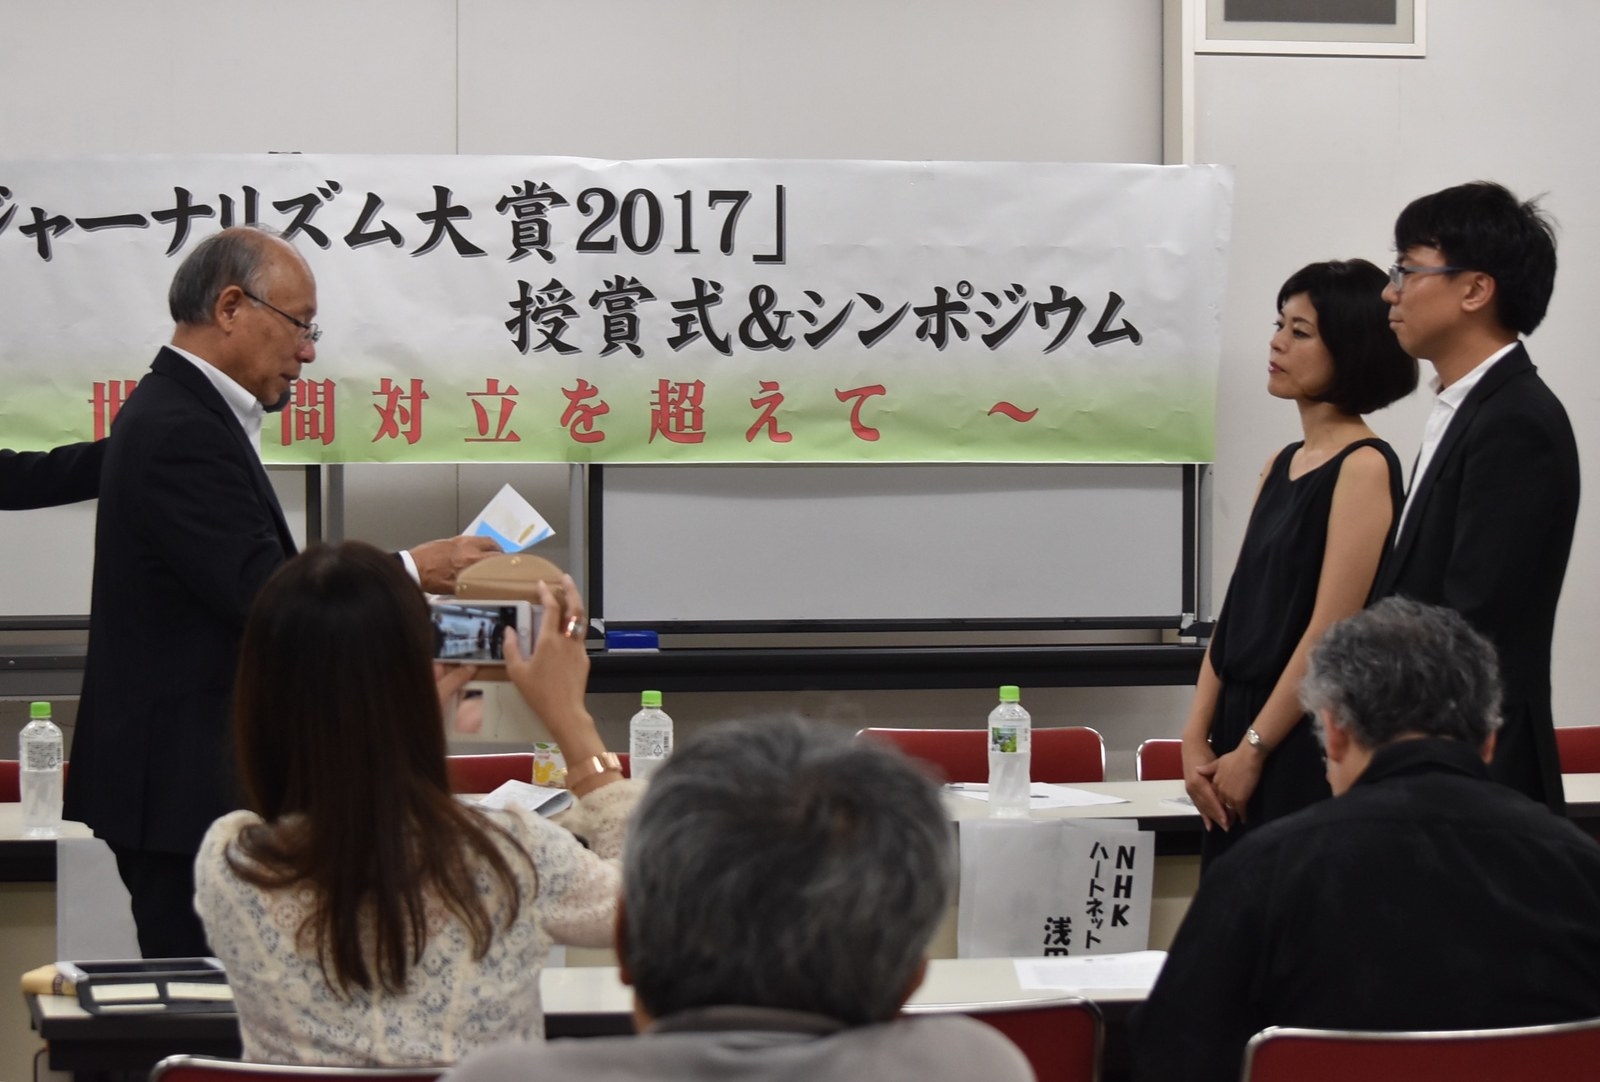 ステレオタイプと違う形の報道 Buzzfeed Japanが 貧困ジャーナリズム賞 を受賞